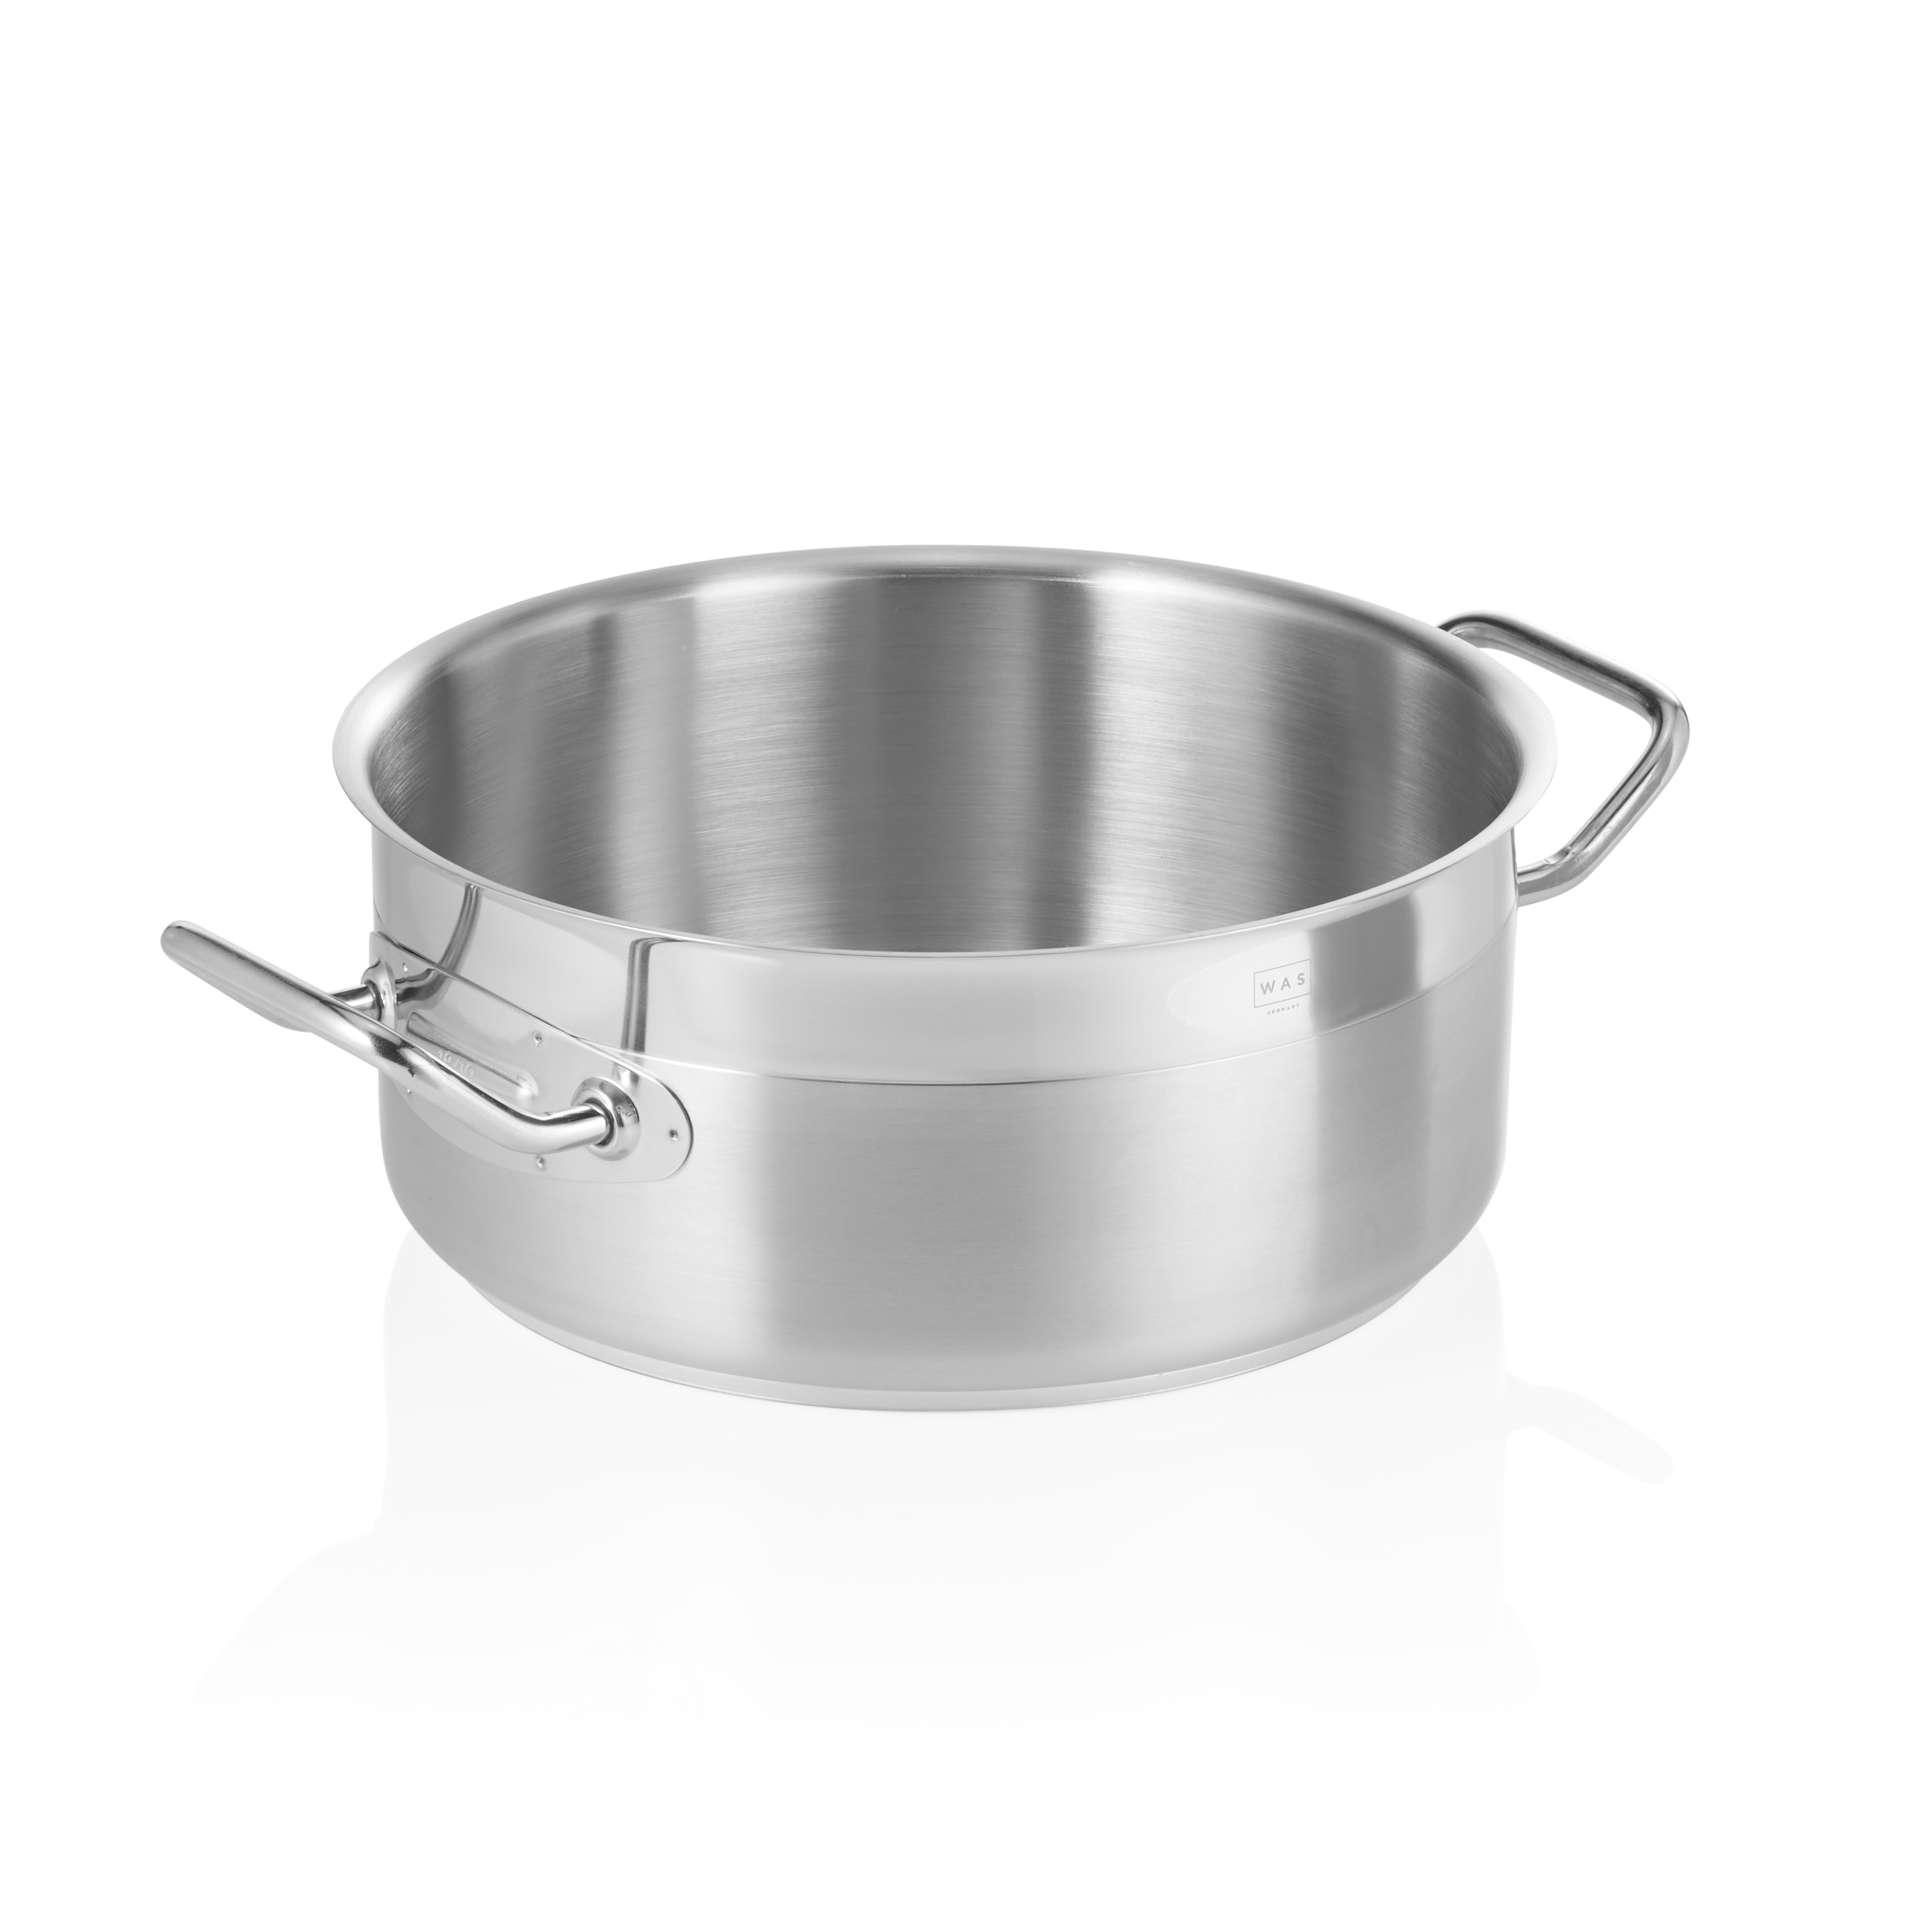 Bratentopf Cookware 21, Ø 28 cm, 7,0 Liter - Höhe 13,0 cm - Edelstahl 18/10